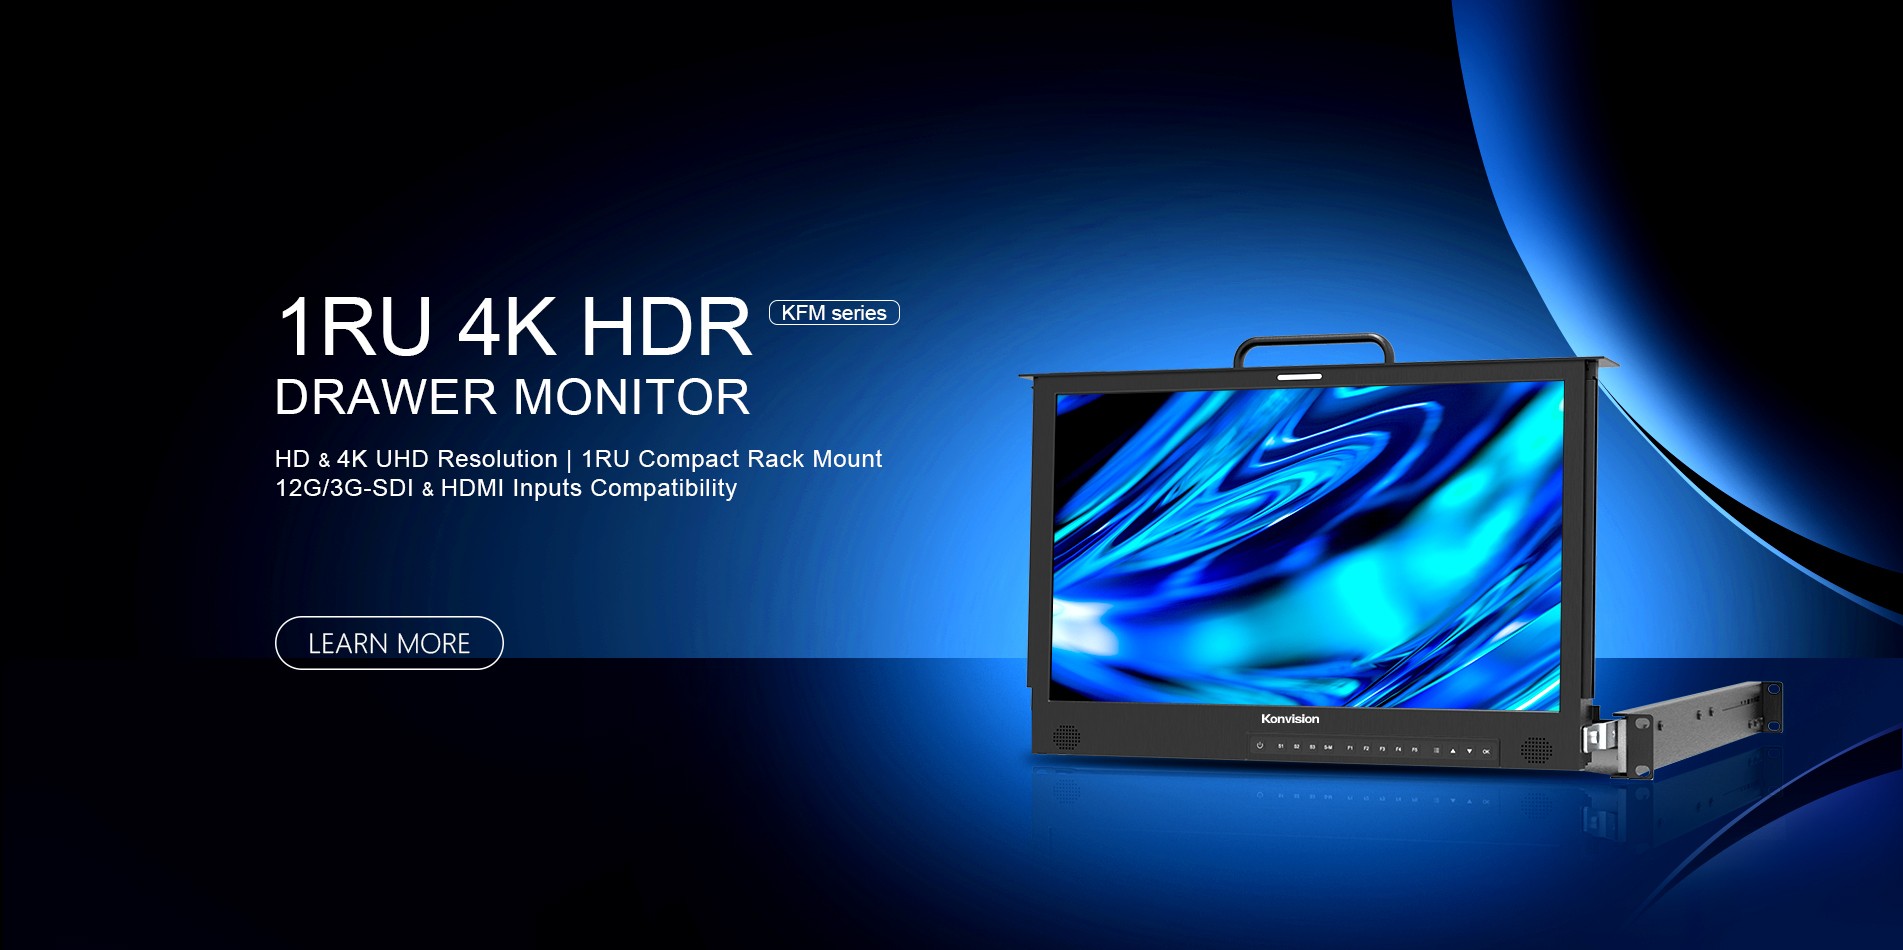 17" 4K HDR 1RU drawer monitor